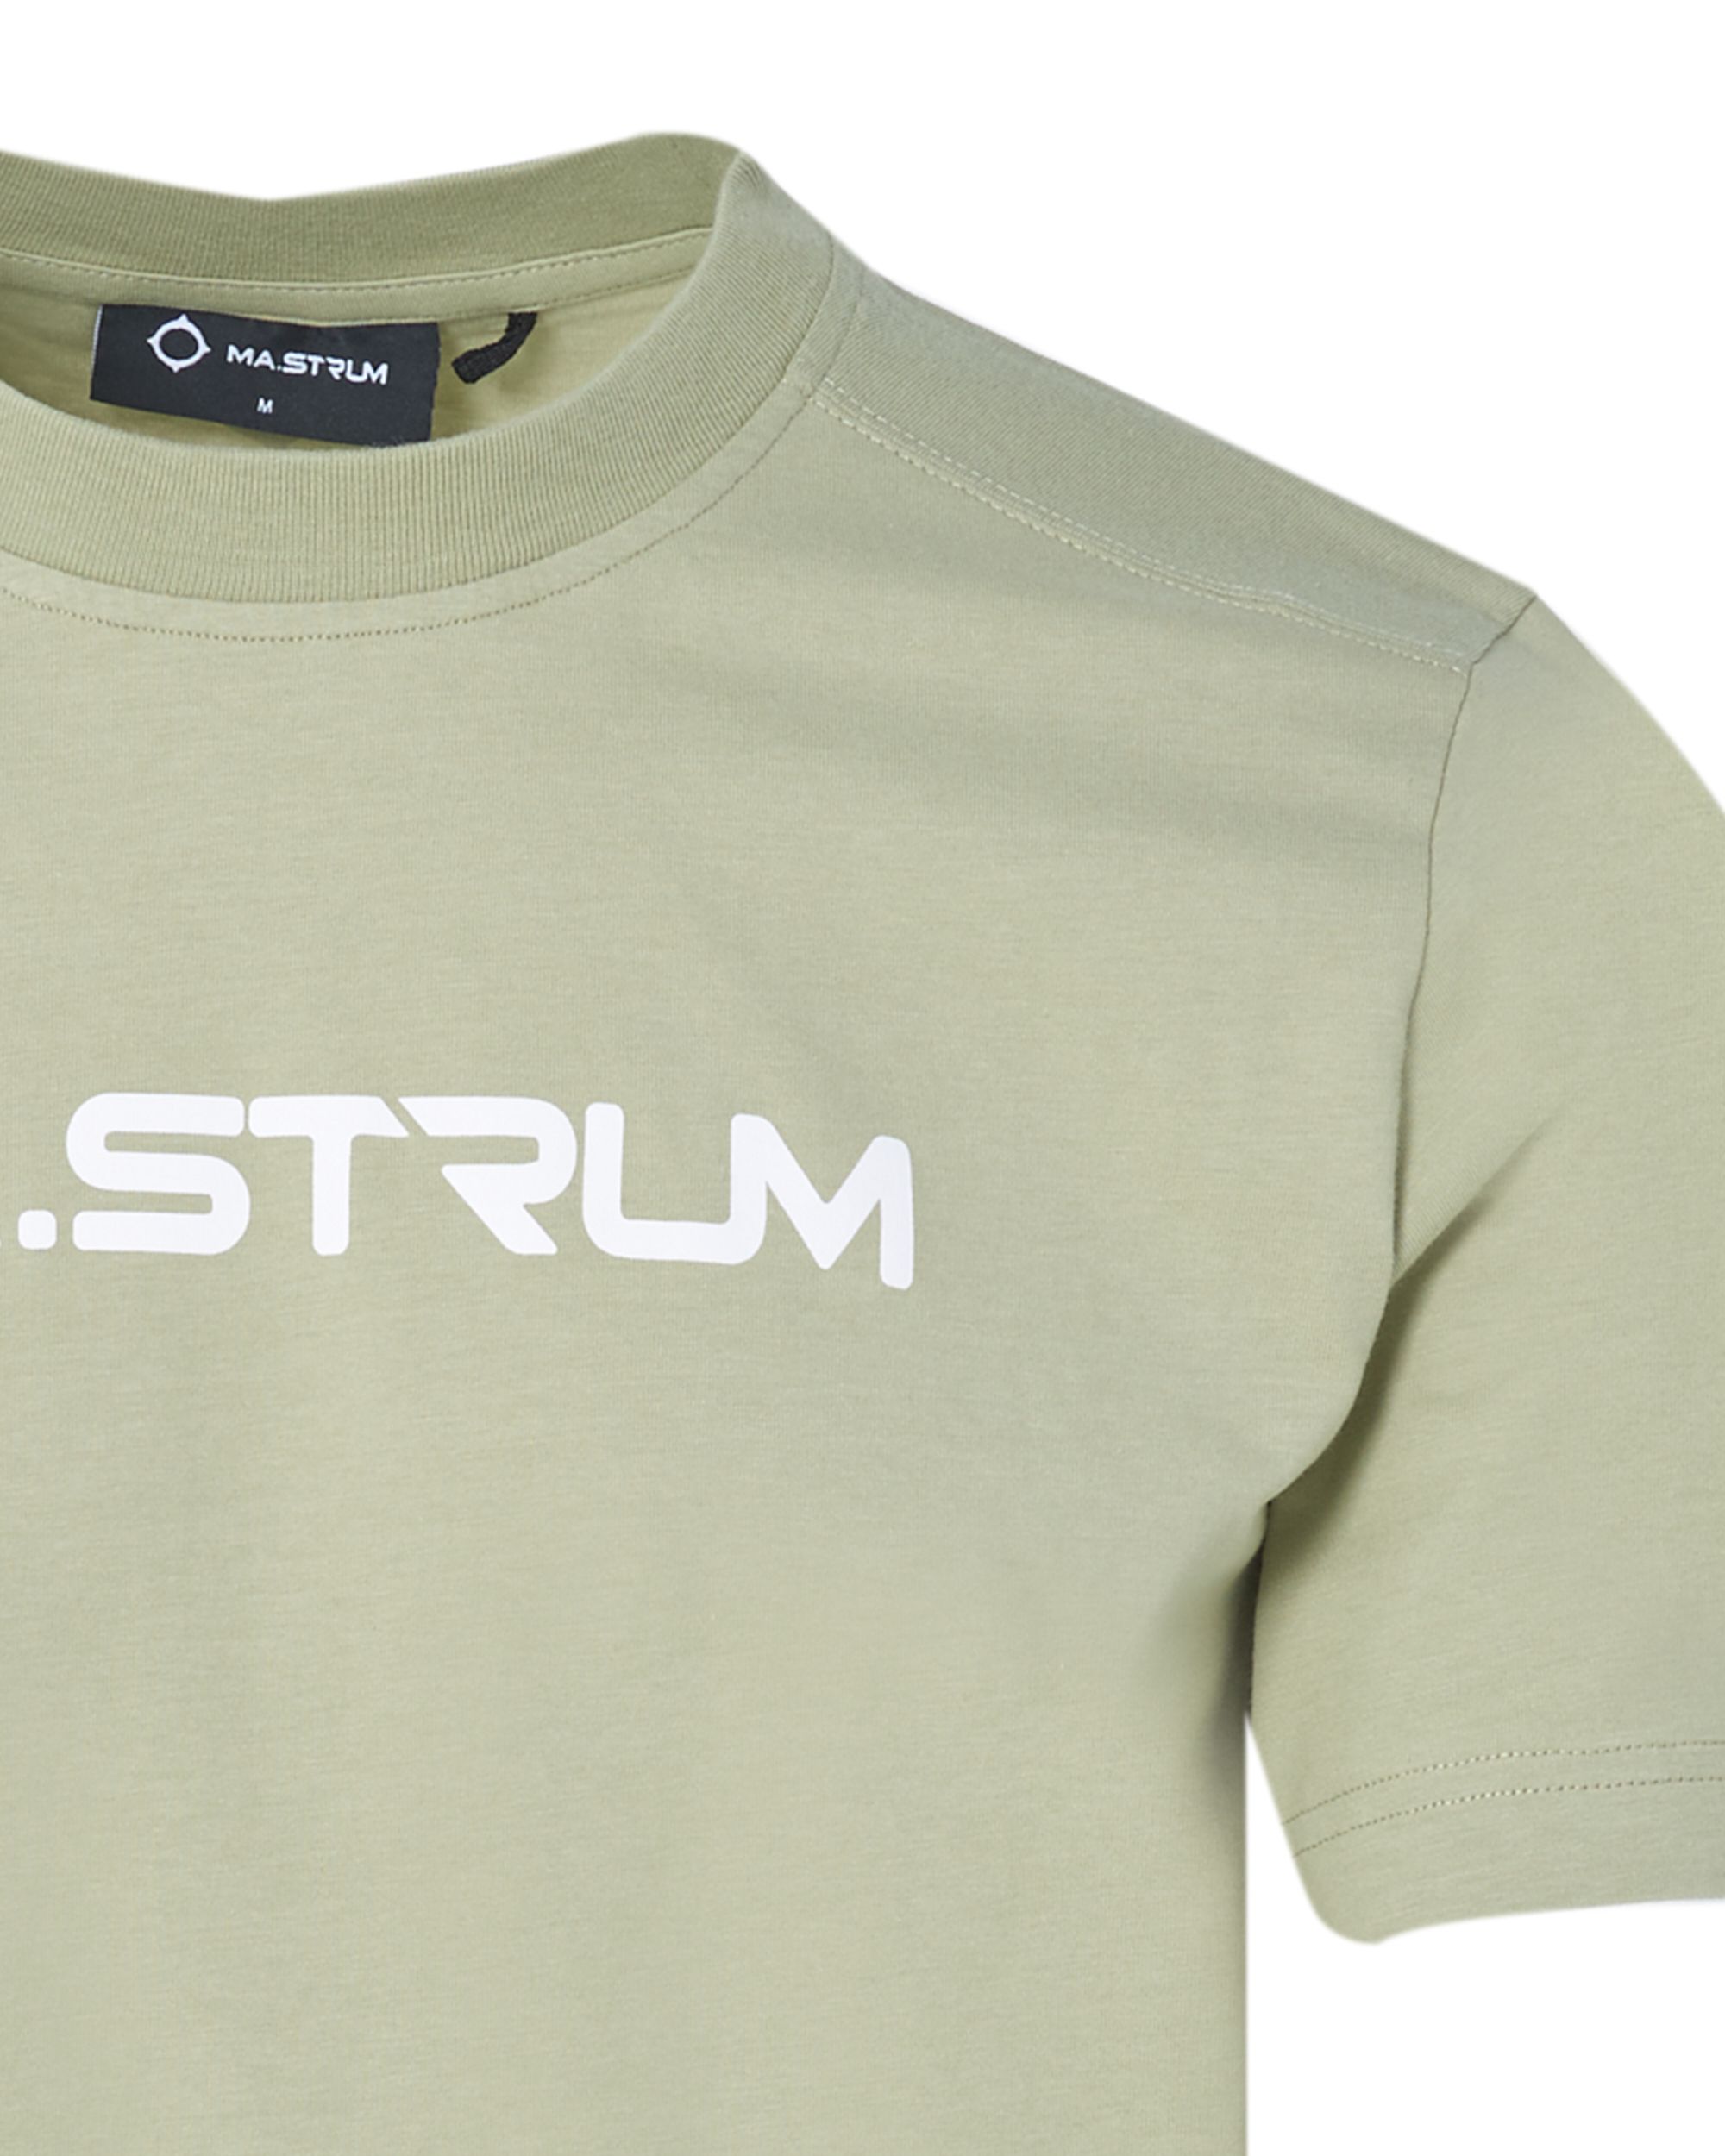 MA.STRUM T-shirt KM Licht groen 083679-001-L